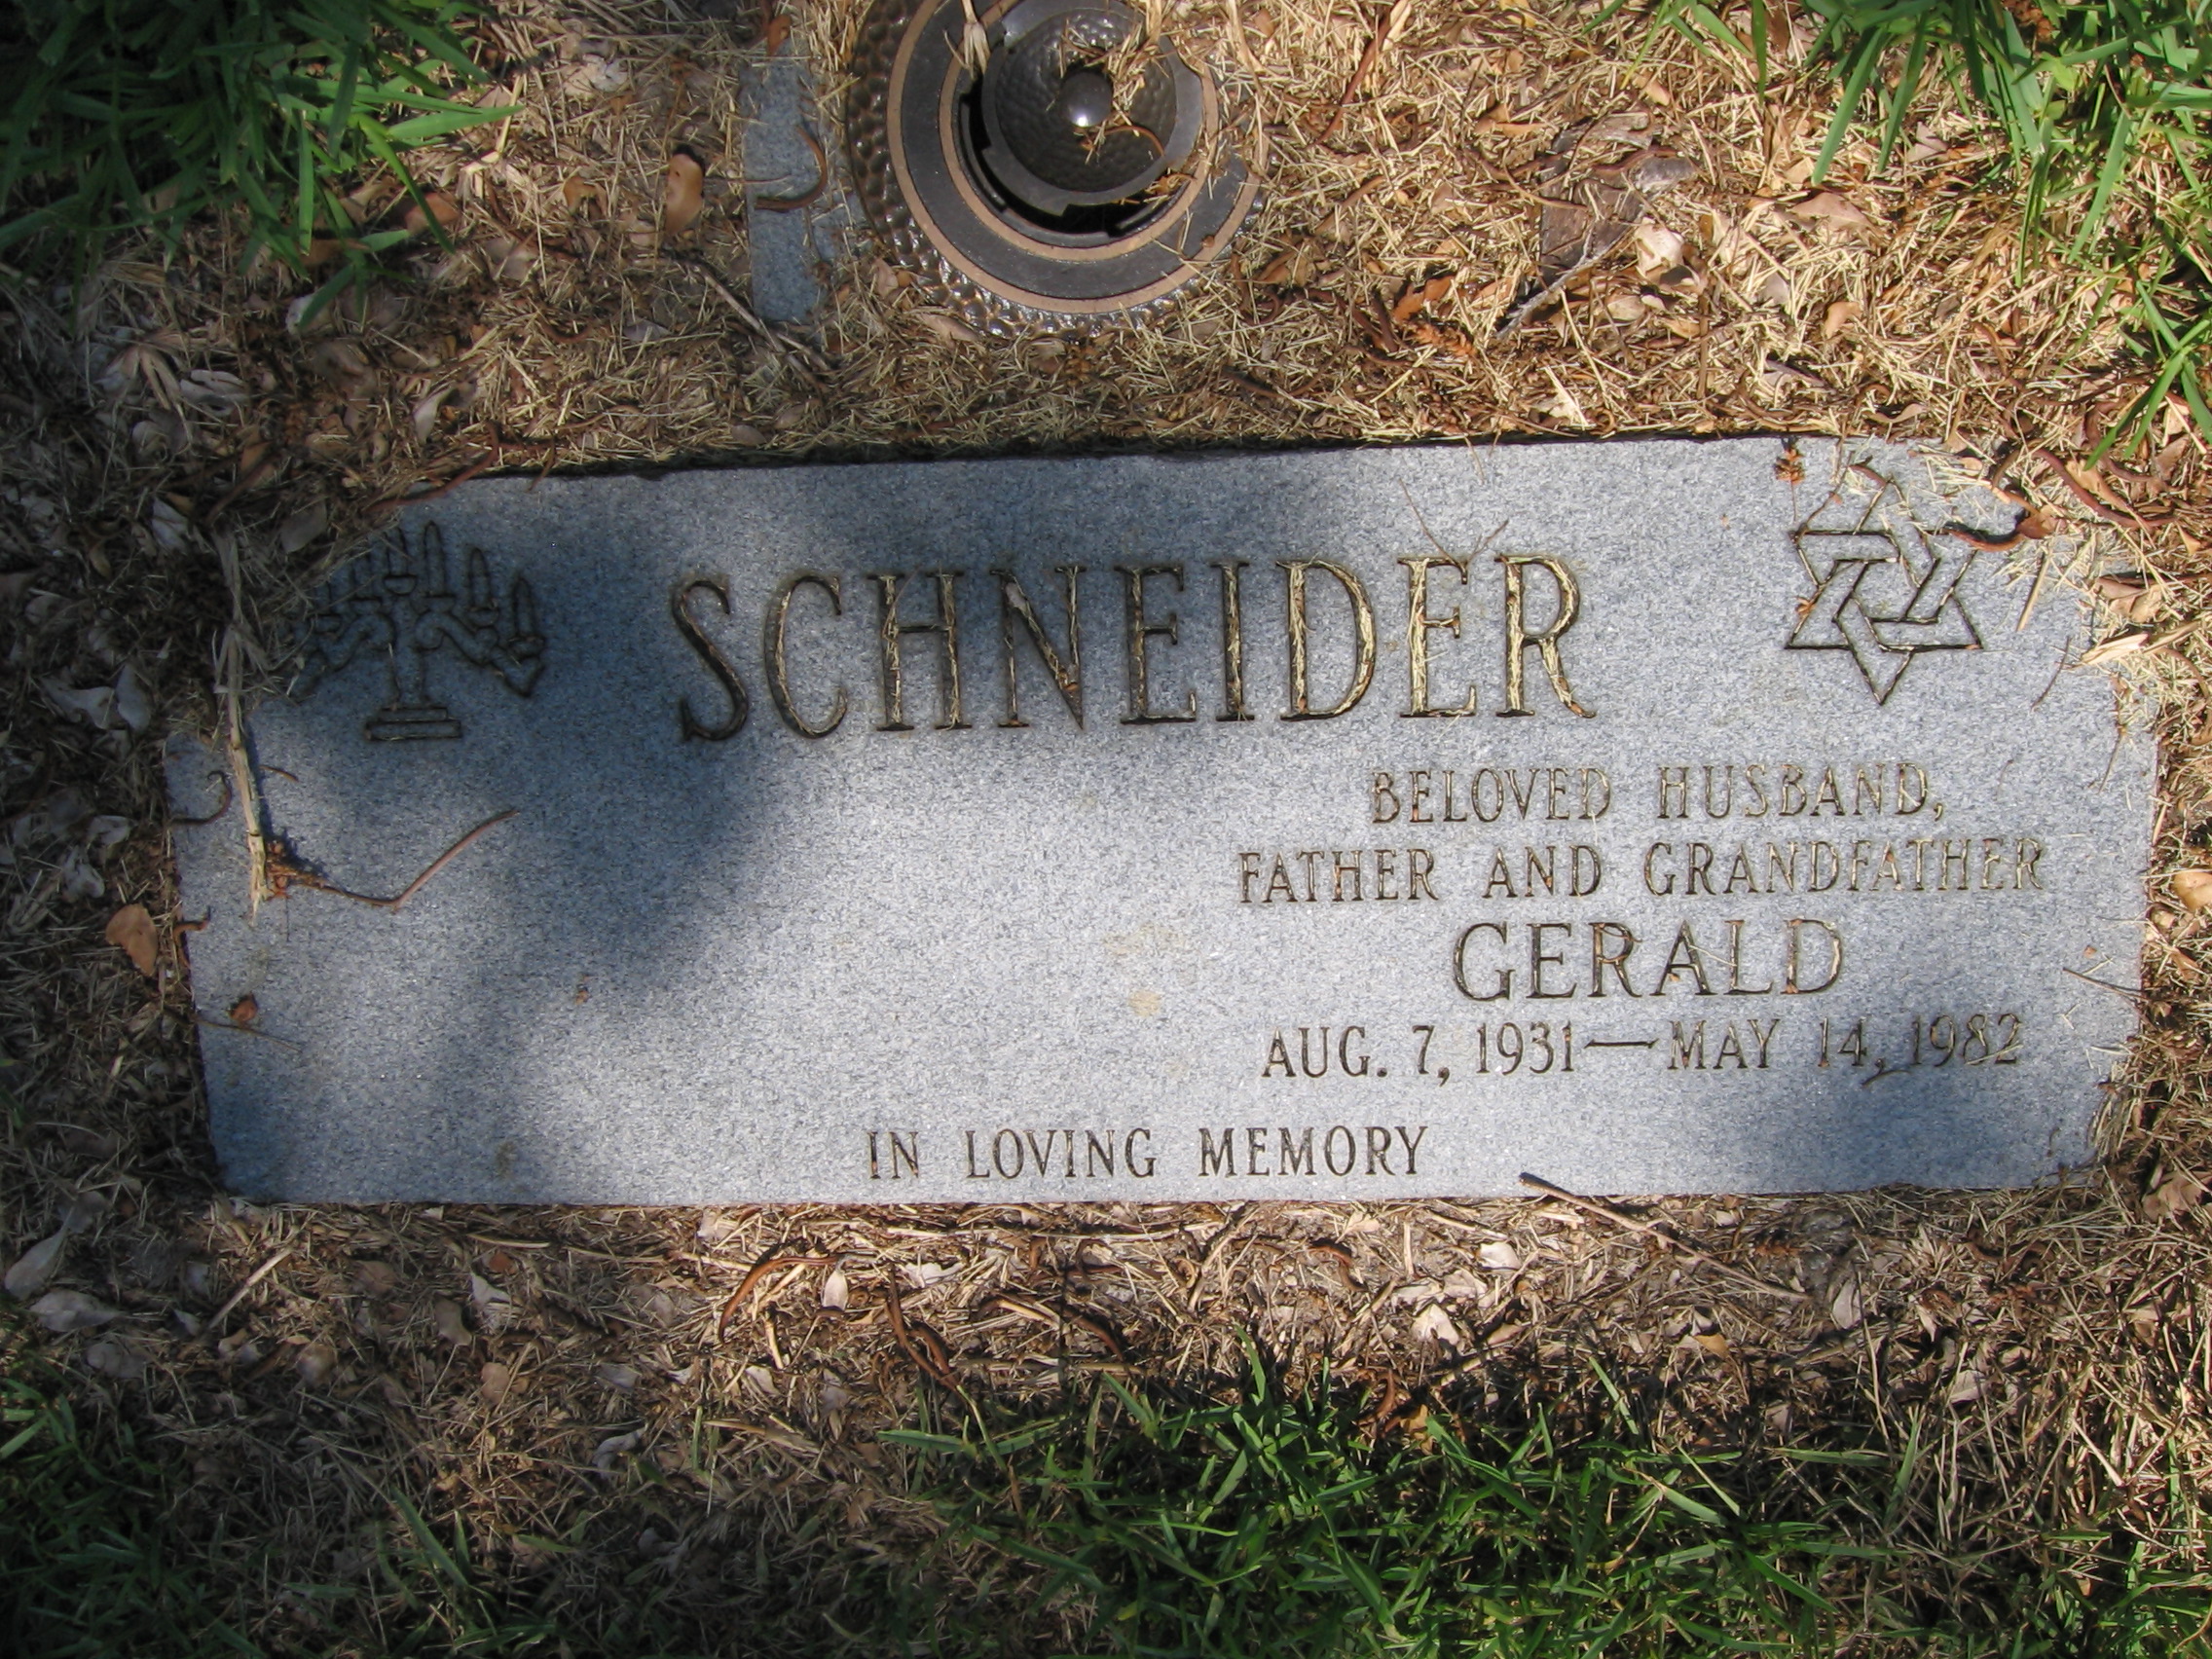 Gerald Schneider